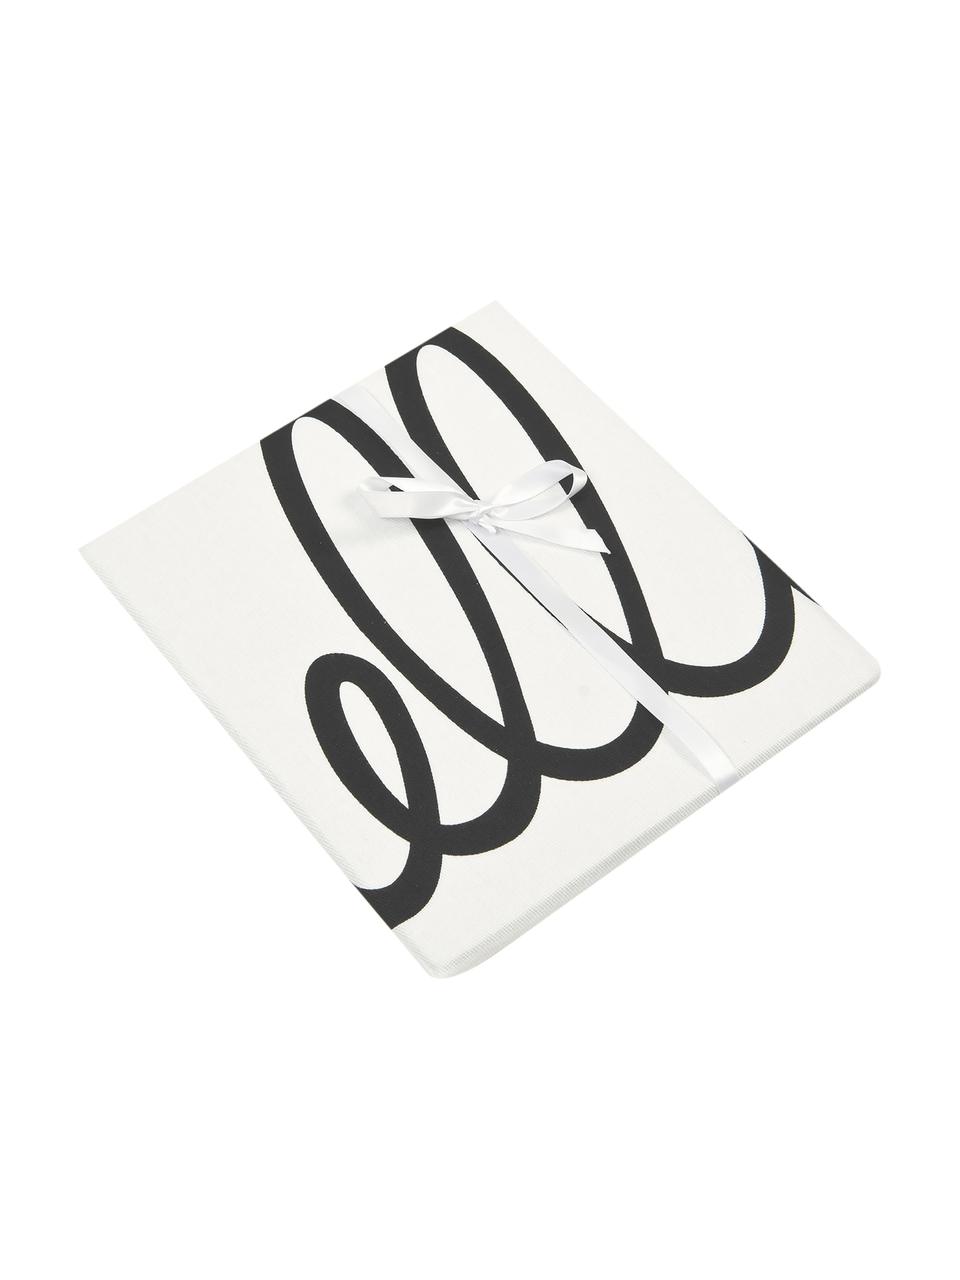 Kussenhoes Hello met opschrift in zwart/wit, 100% katoen, panamabinding, Zwart, crèmewit, 40 x 40 cm